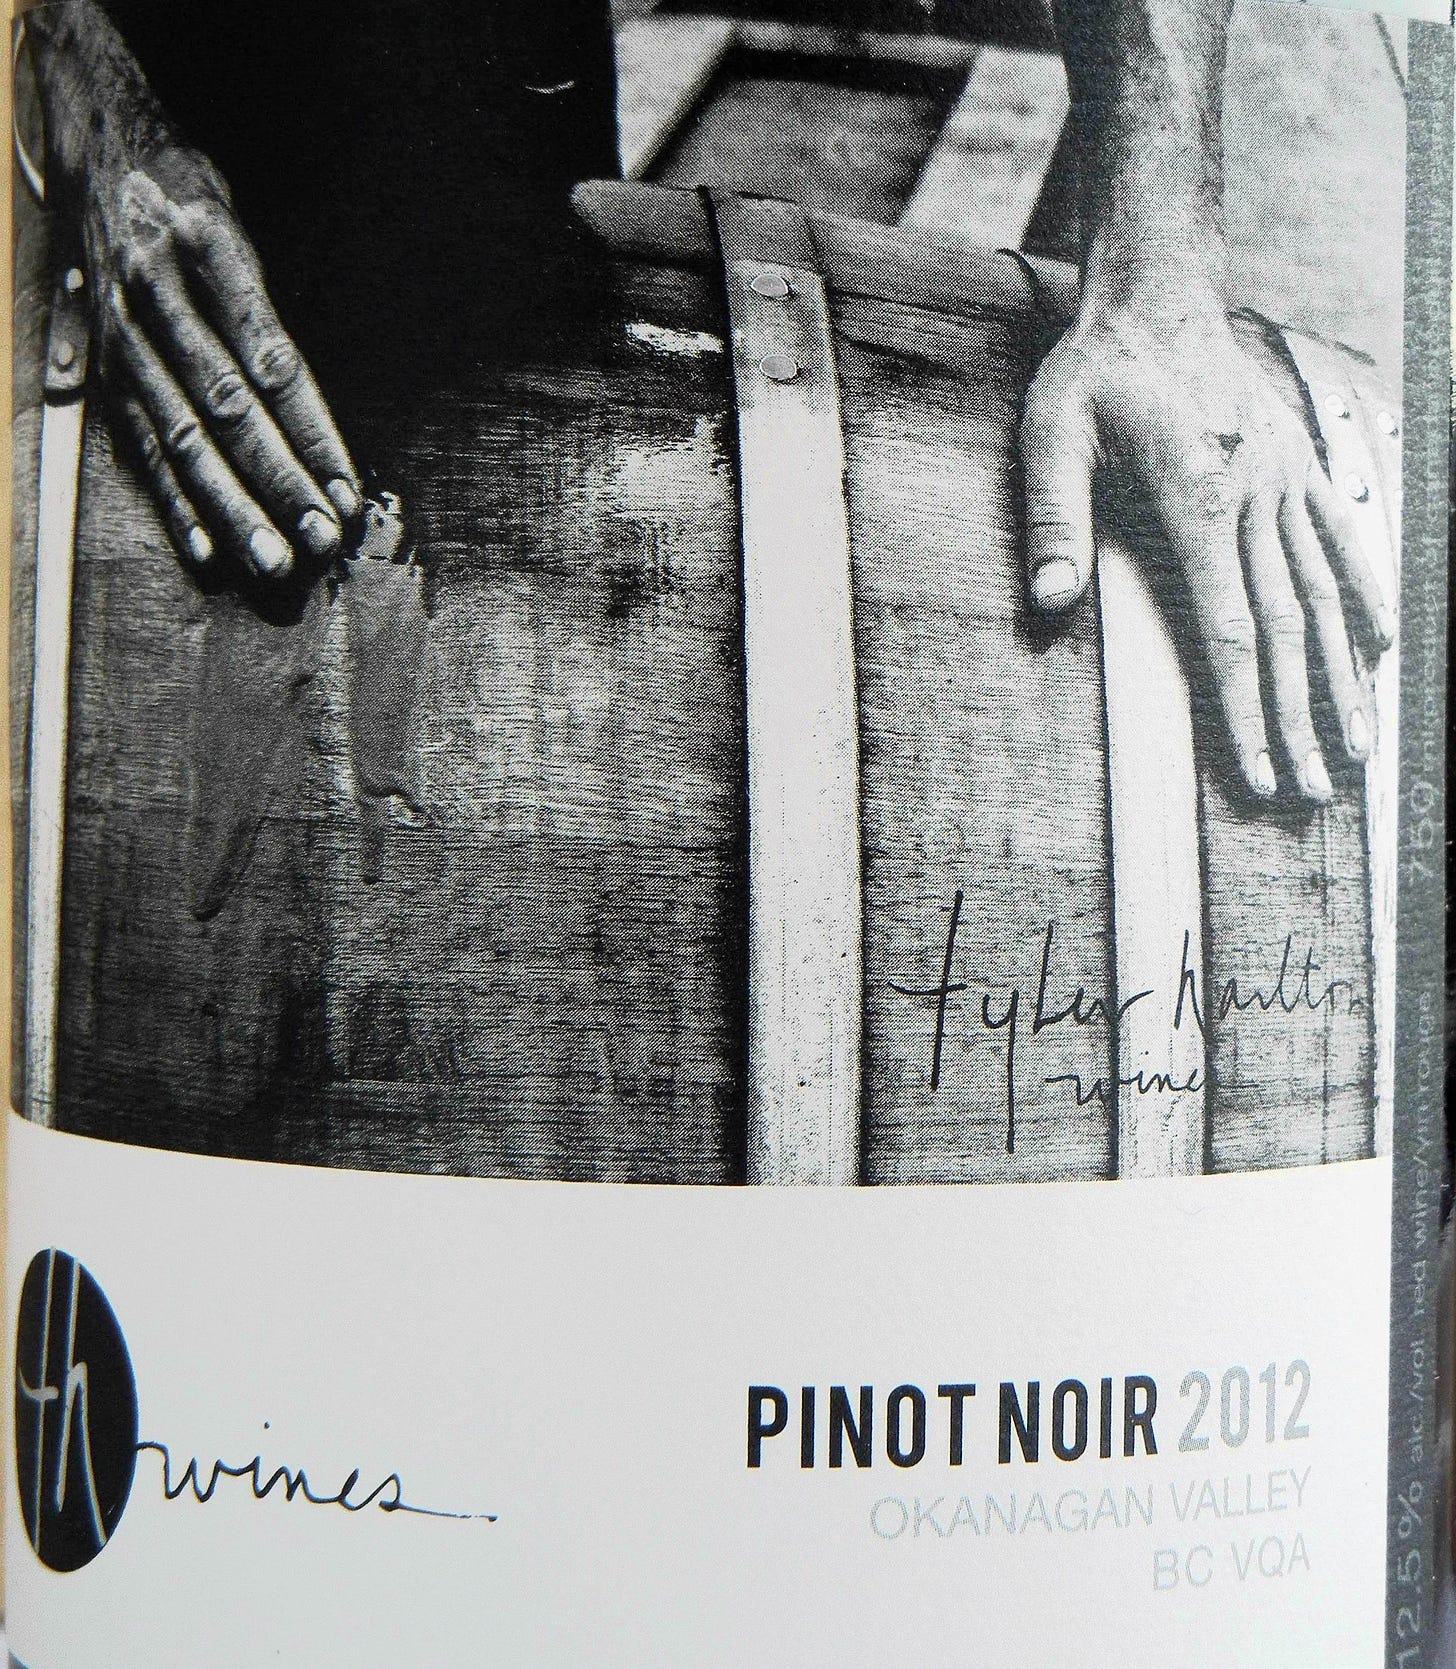 Tyler Harlton Pinot Noir 2012 Label - BC Pinot Noir Tasting Review 18